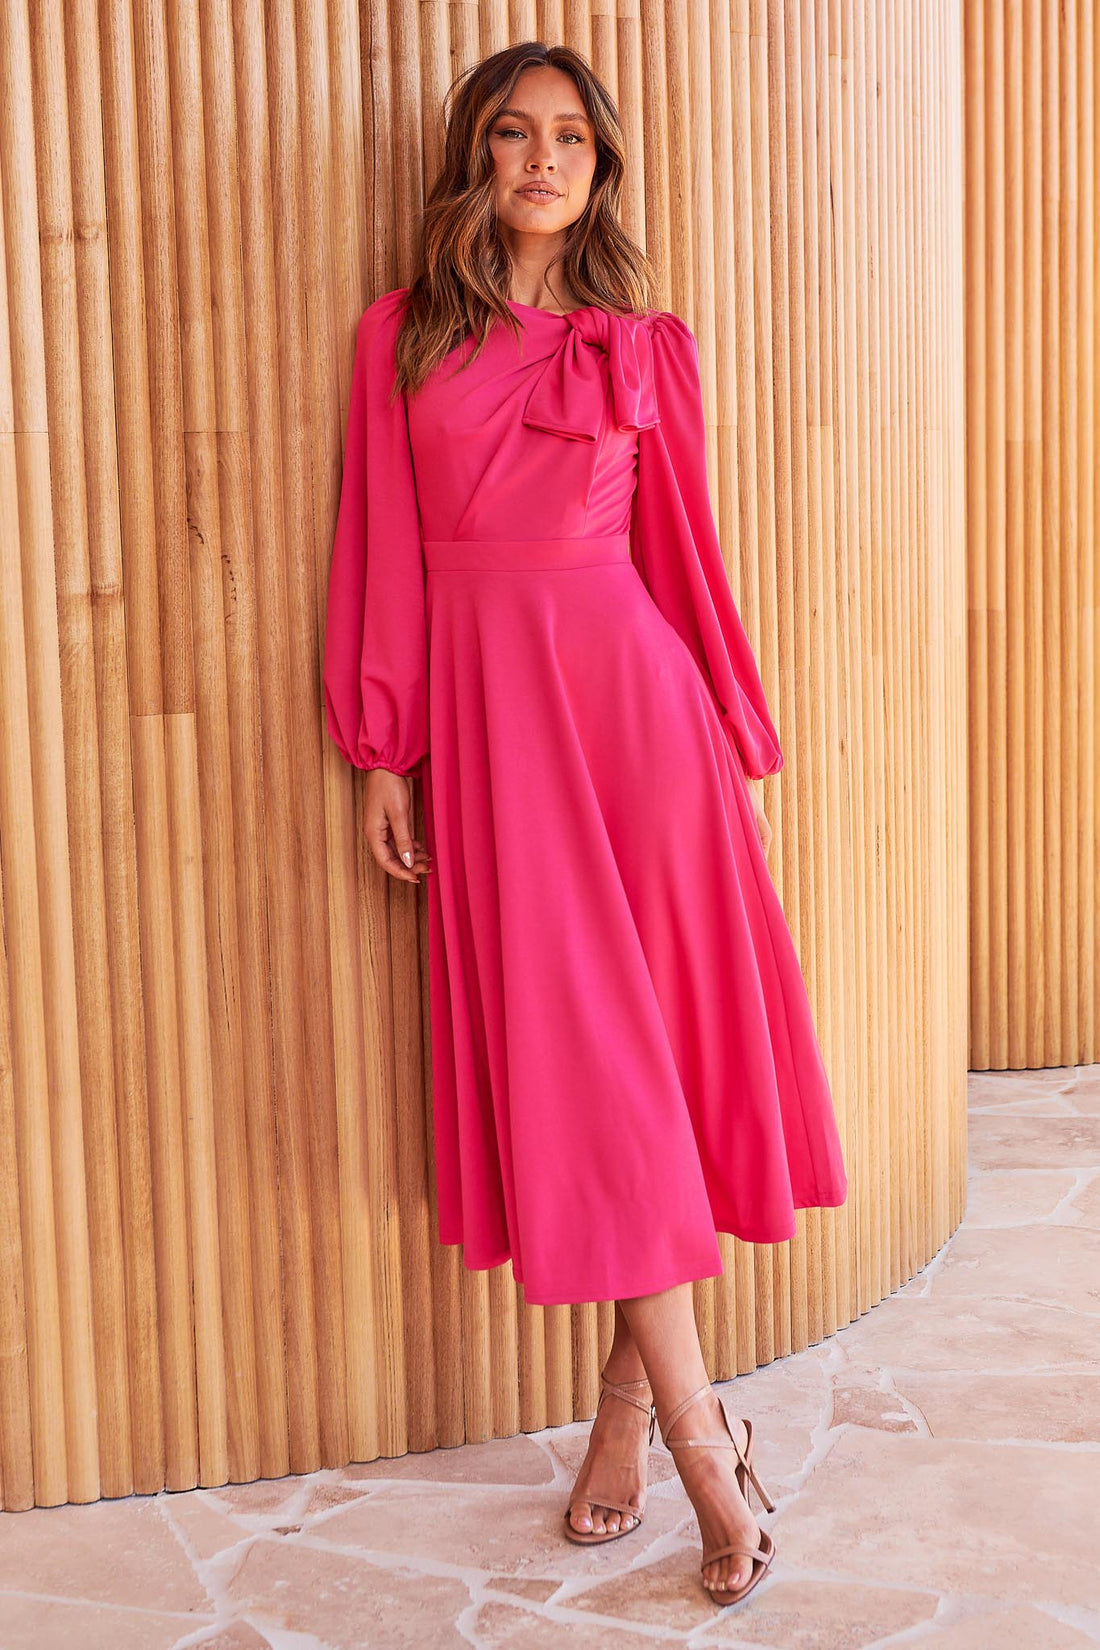 Kate Bow Shoulder Dress - Pink - FINAL SALE